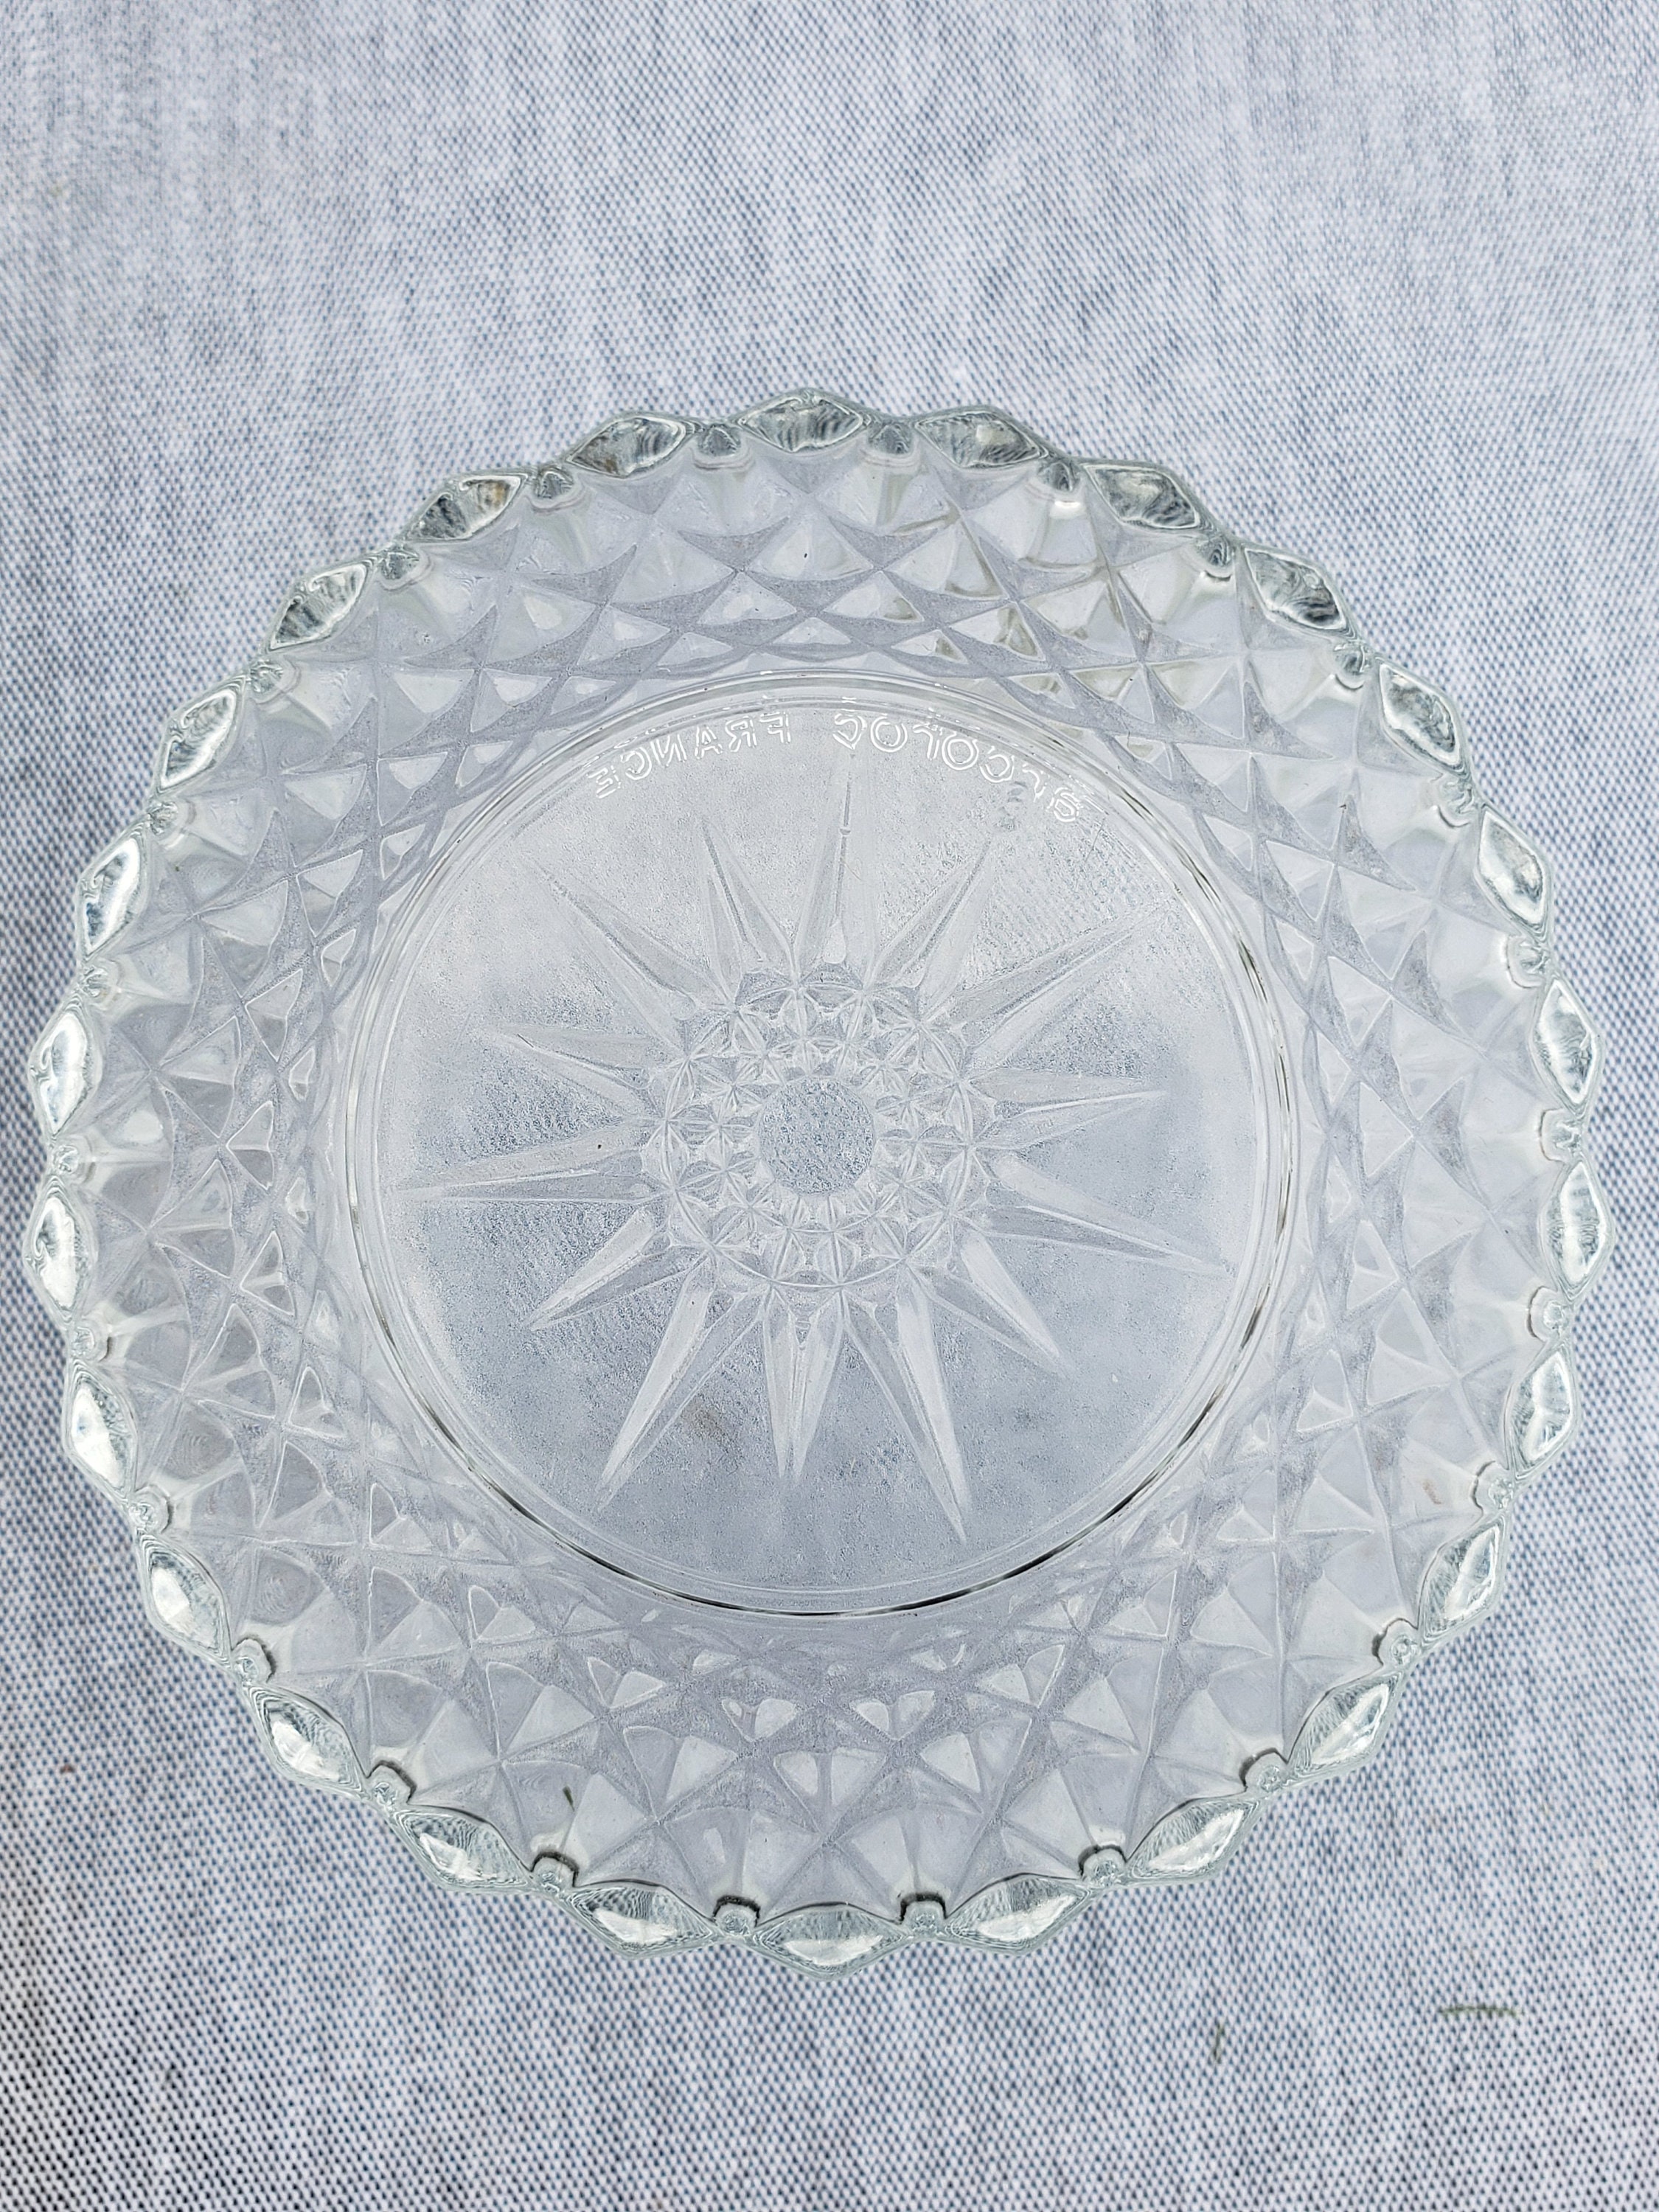 Arcoroc Cut Crystal Elegant Sunburst Starburst Glass Chip | Etsy